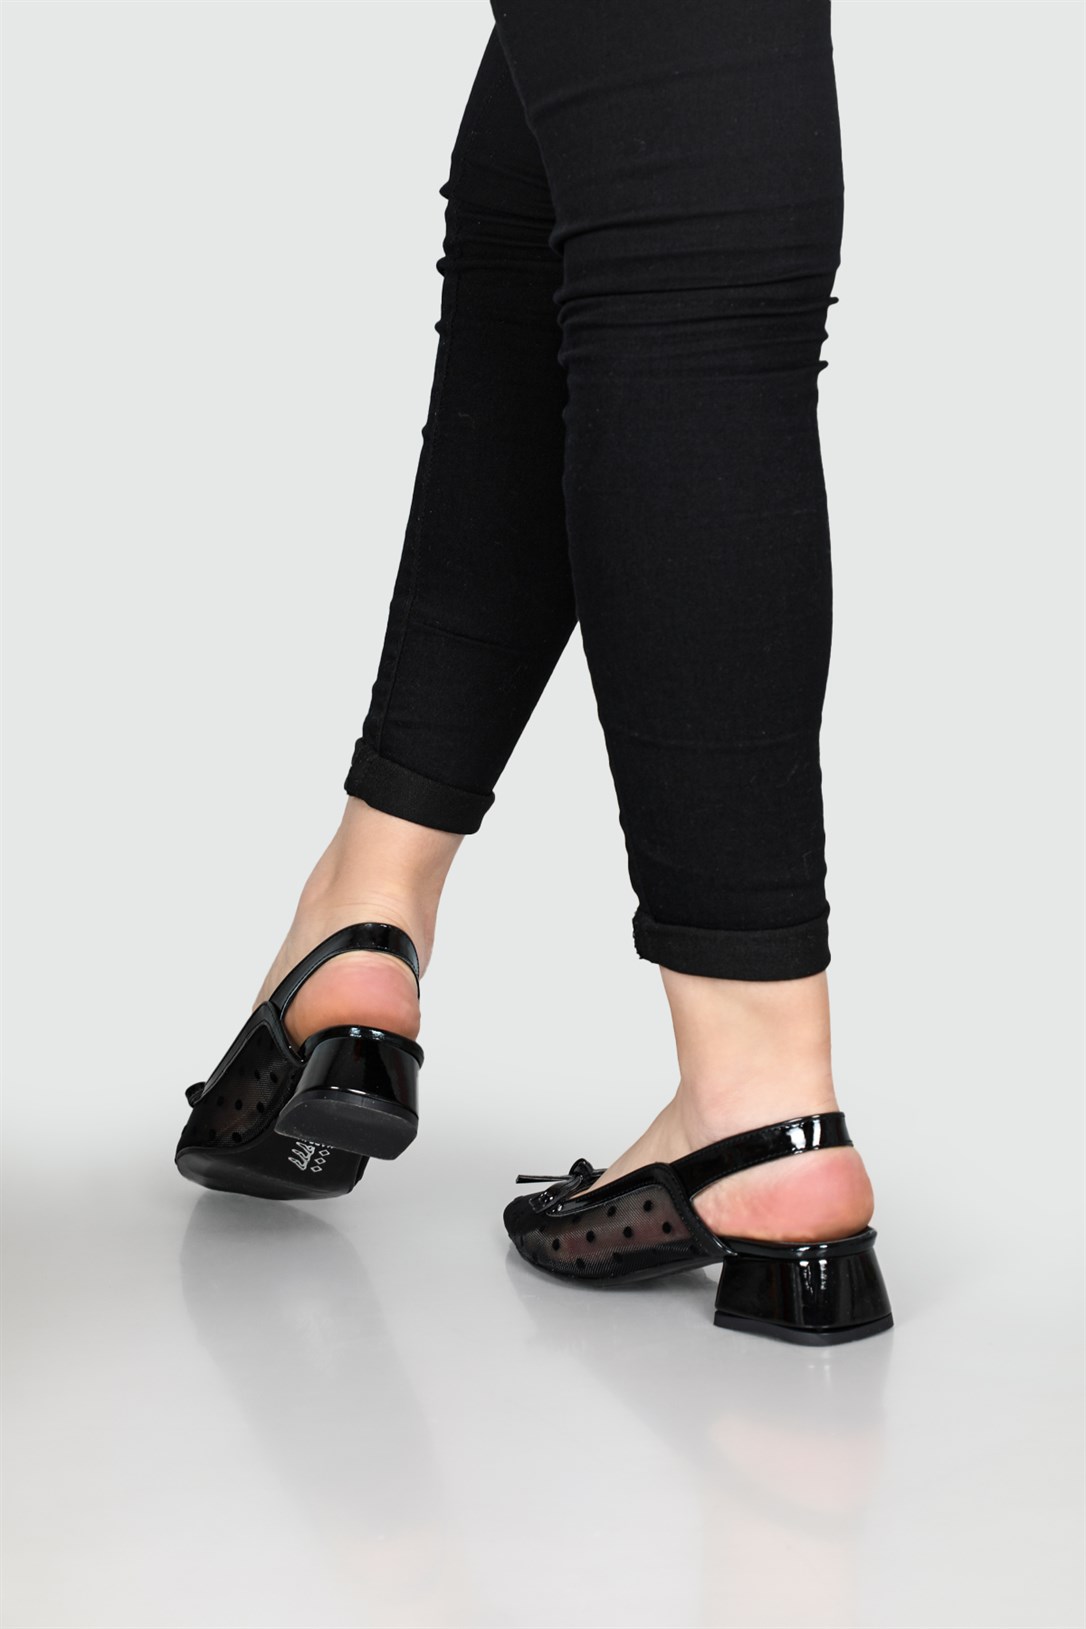 Serap Arkası Açık Tül Detaylı Benekli Fiyonklu 5 cm Topuklu Siyah Rugan  Kadın Ayakkabı 103